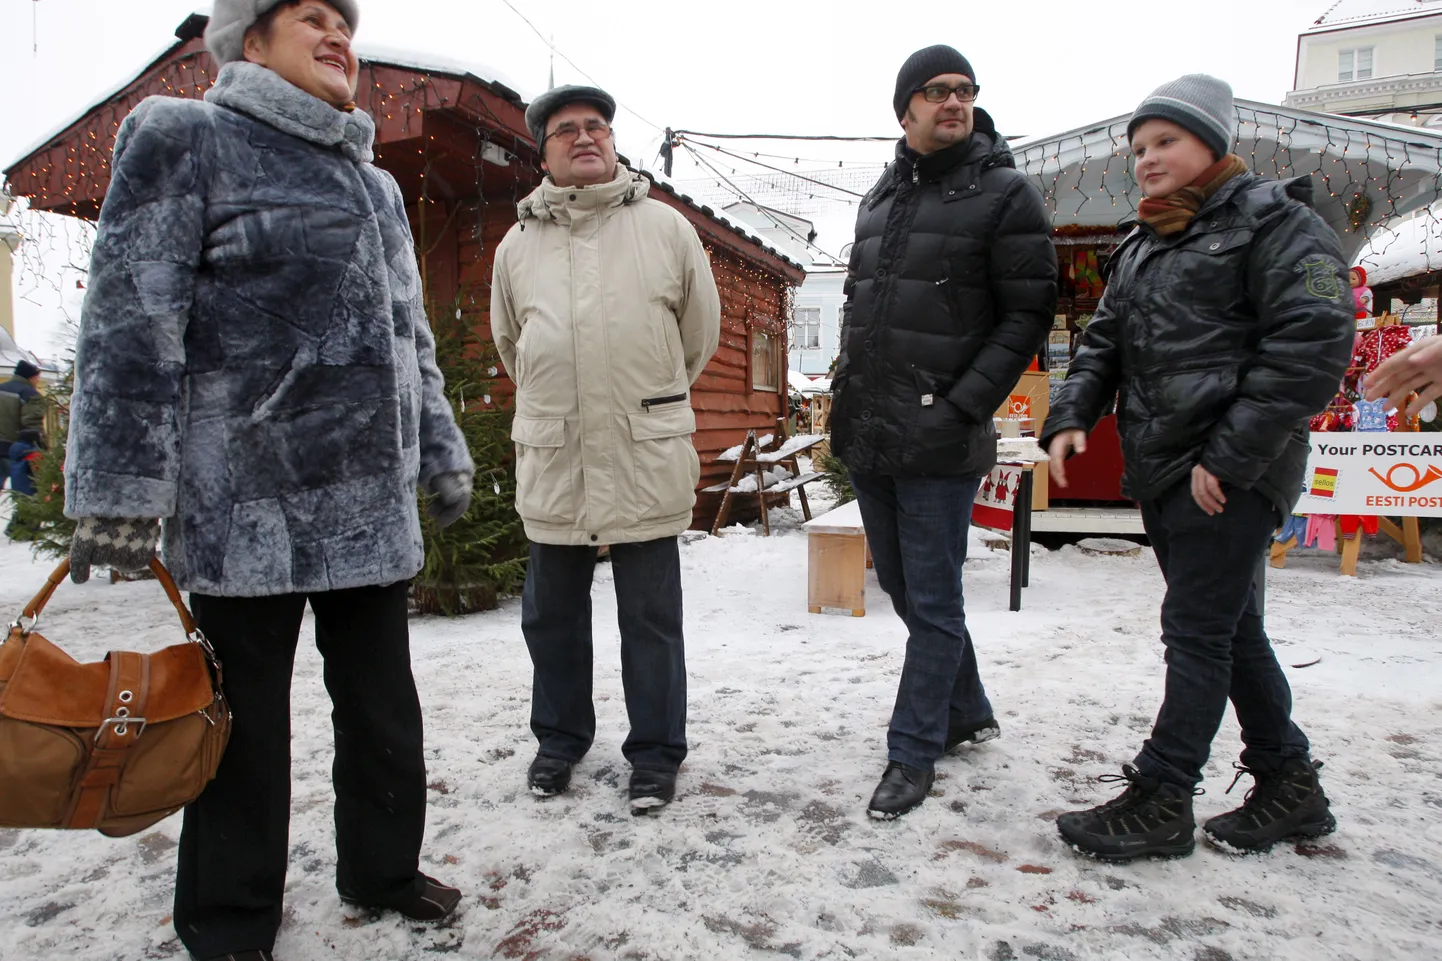 Vene turistid eelmise aastavahetuse aegu Tallinnas jõuluturul.